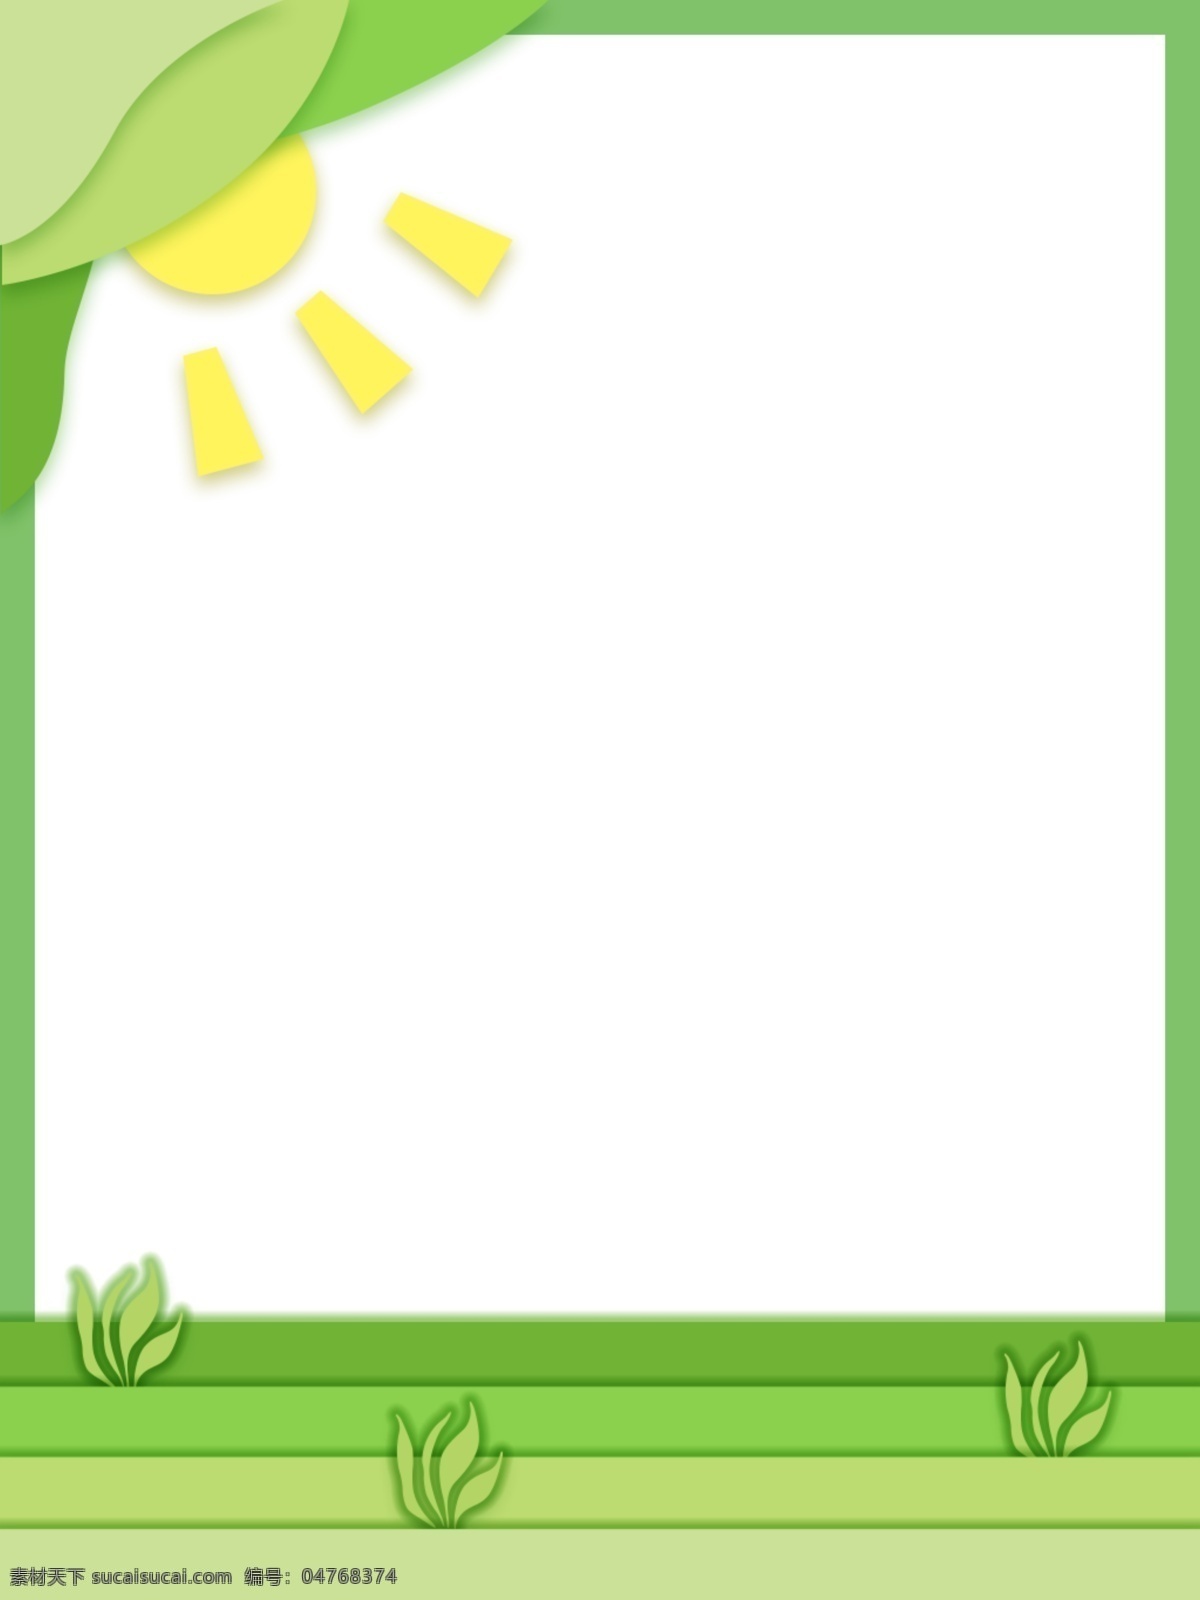 春天海报 绿色素材 春天素材 绿色树叶 自然风景图片 春天 春季素材 春季海报 绿色 绿色背景素材 绿色封面 绿色海报 清爽素材 绿色护眼素材 分层